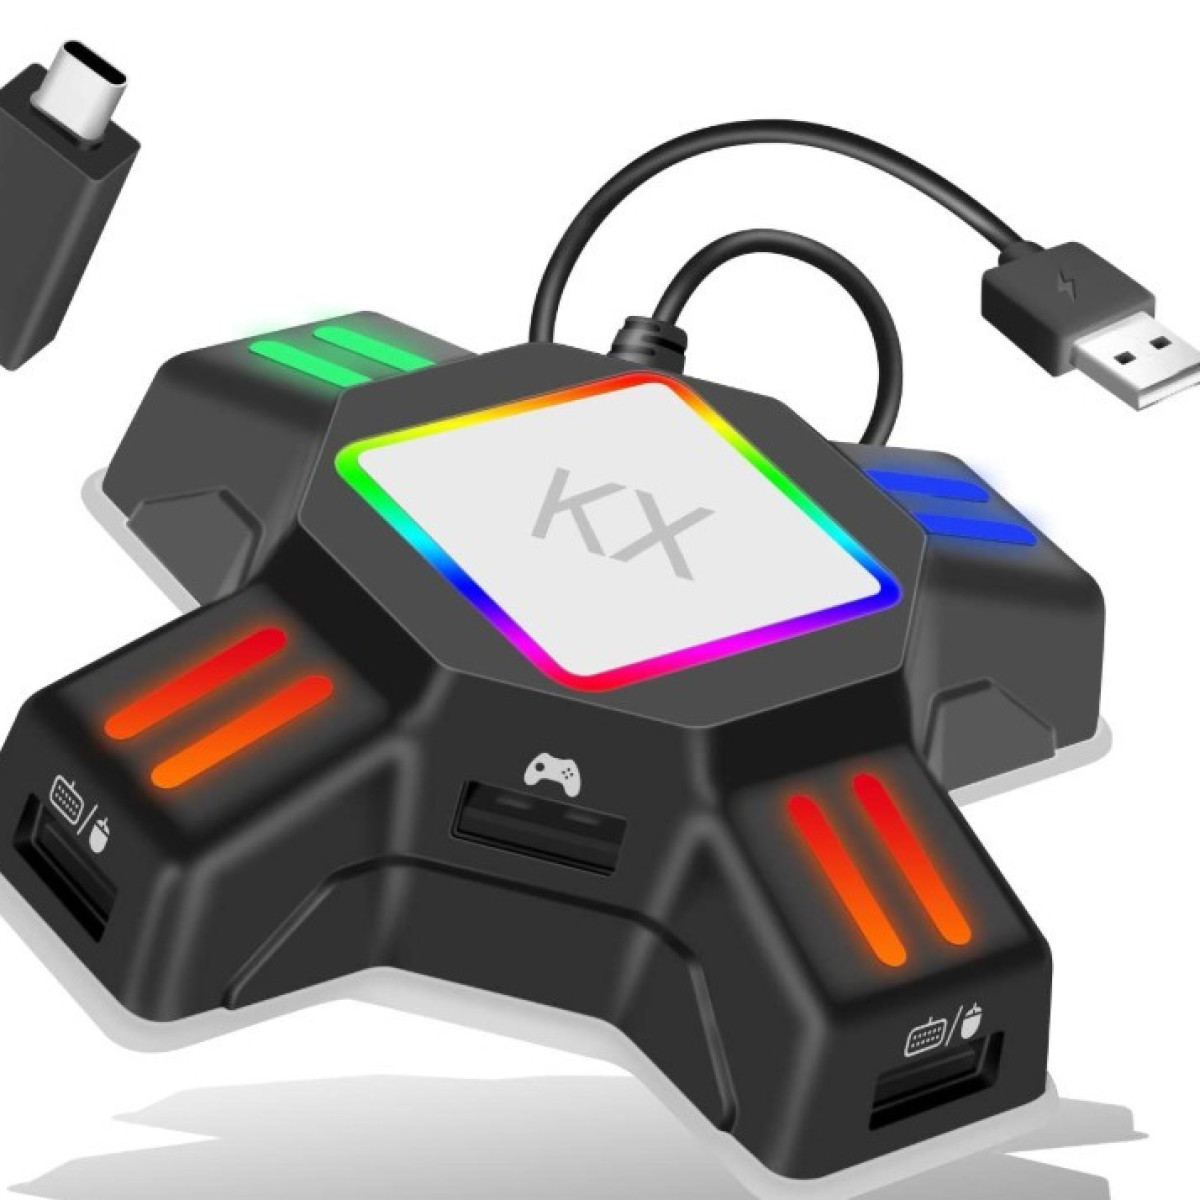 INF Adapter für Maus Tastatur 4 PS3 für One, / Xbox 4 für Adapter Maus Switch, Switch, und für One, / Xbox PS3 Tastatur und